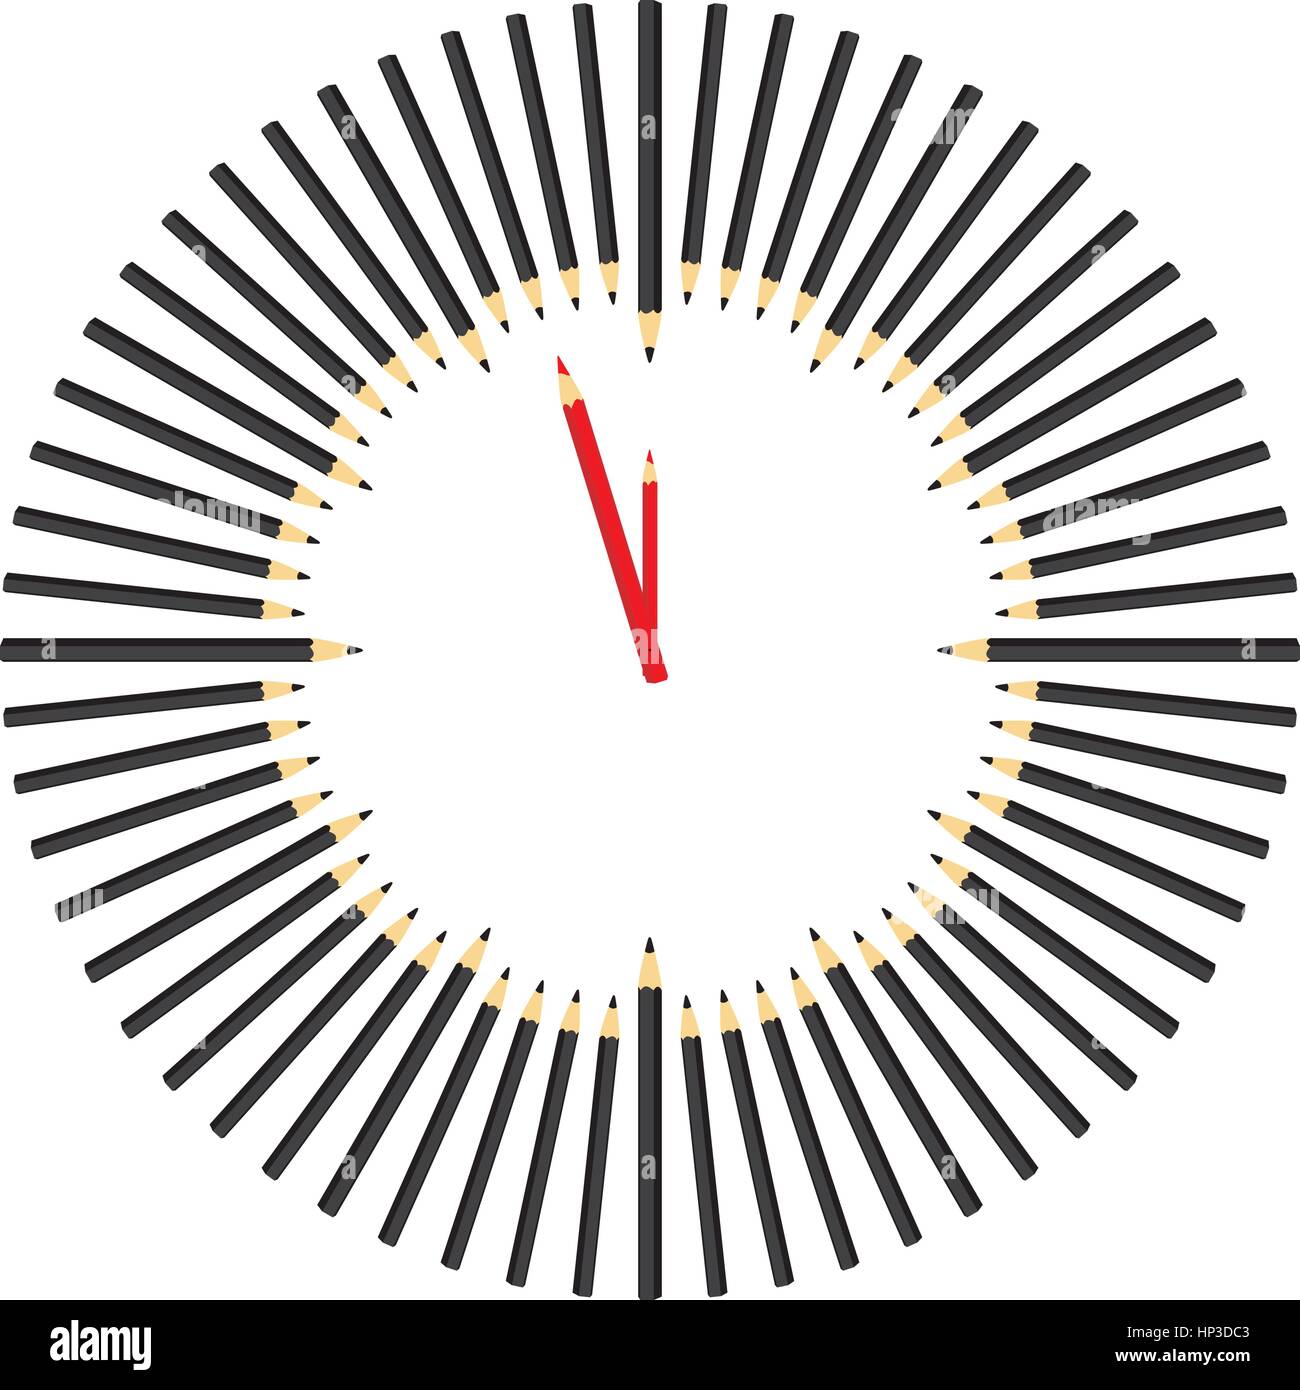 Illustrationen, die Stunden bestehend aus Bleistiften Stock Vektor